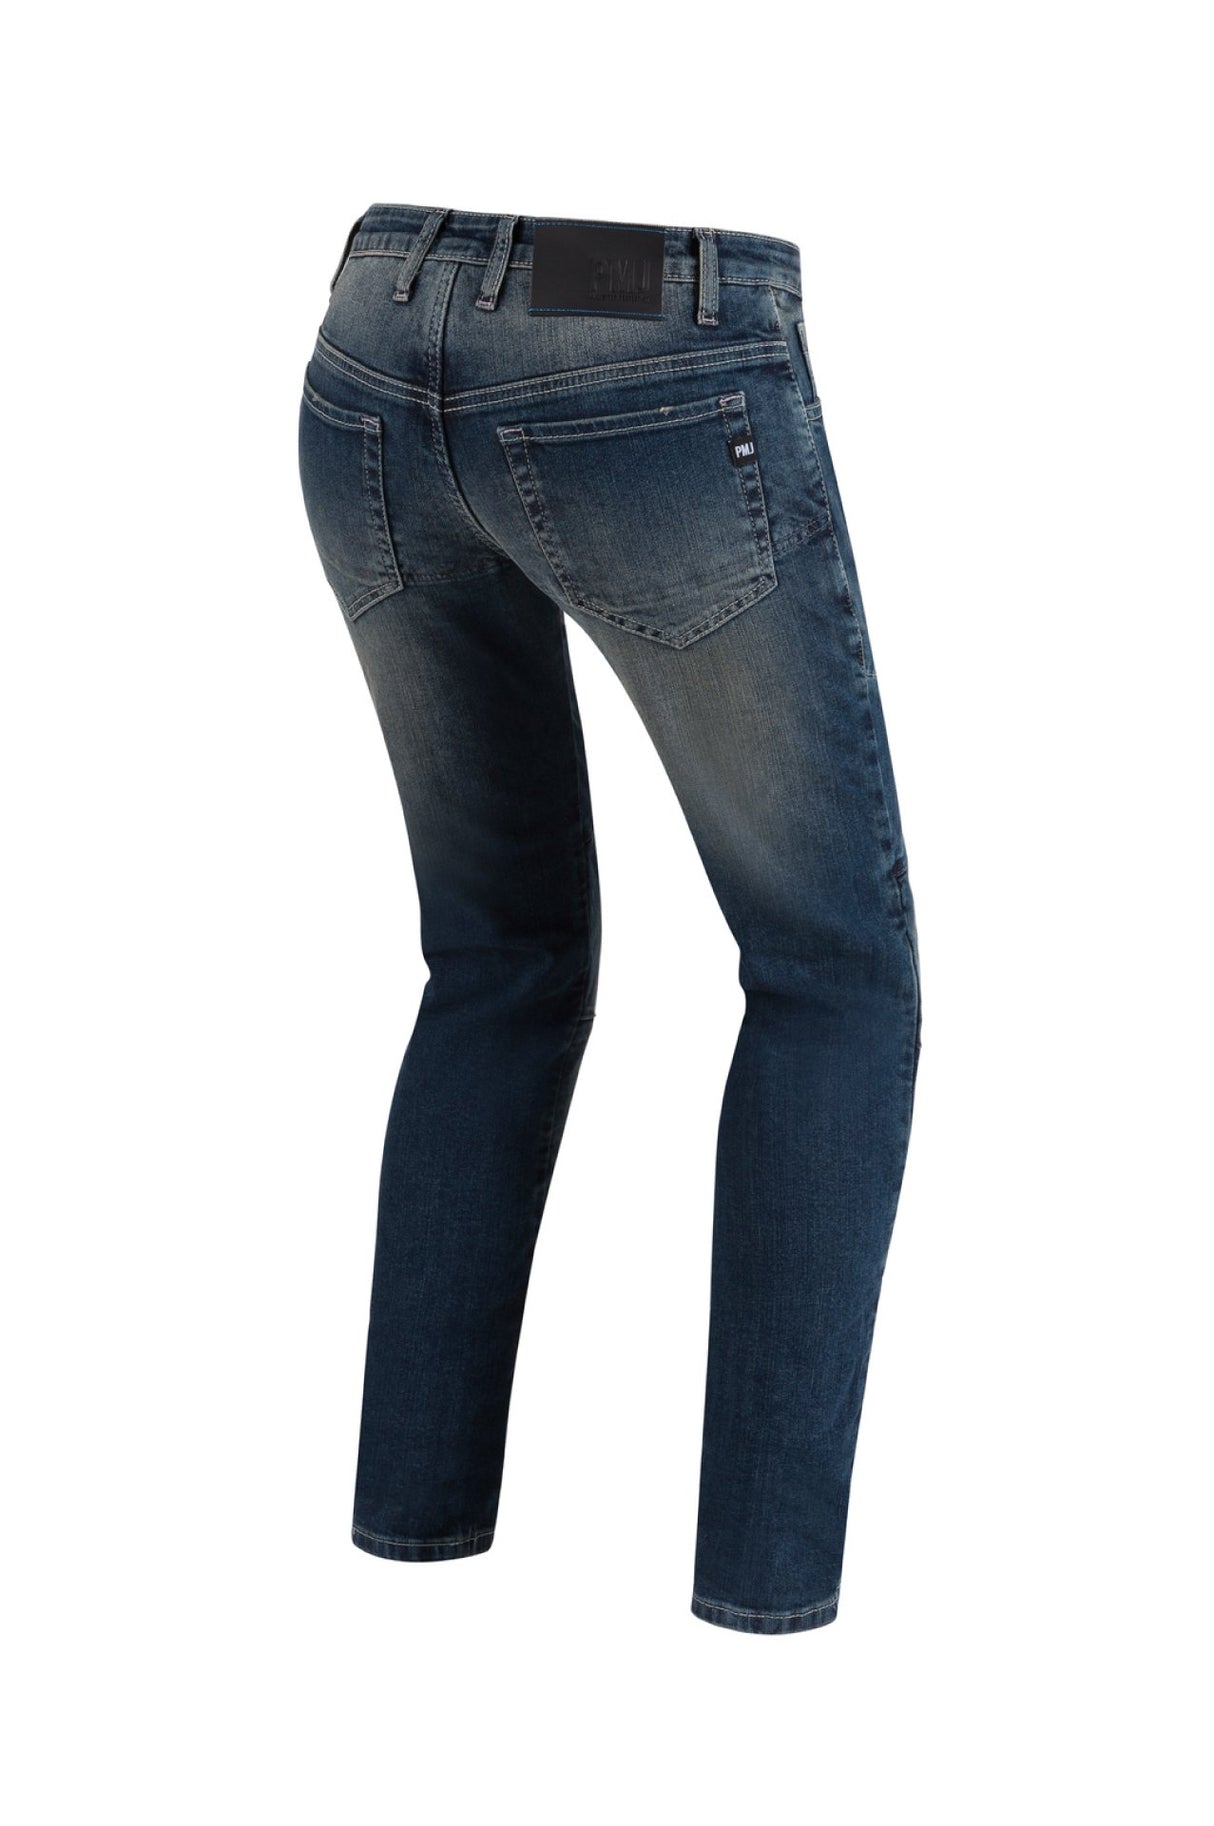 PMJ Florida Ladies Jeans - Mid Blue